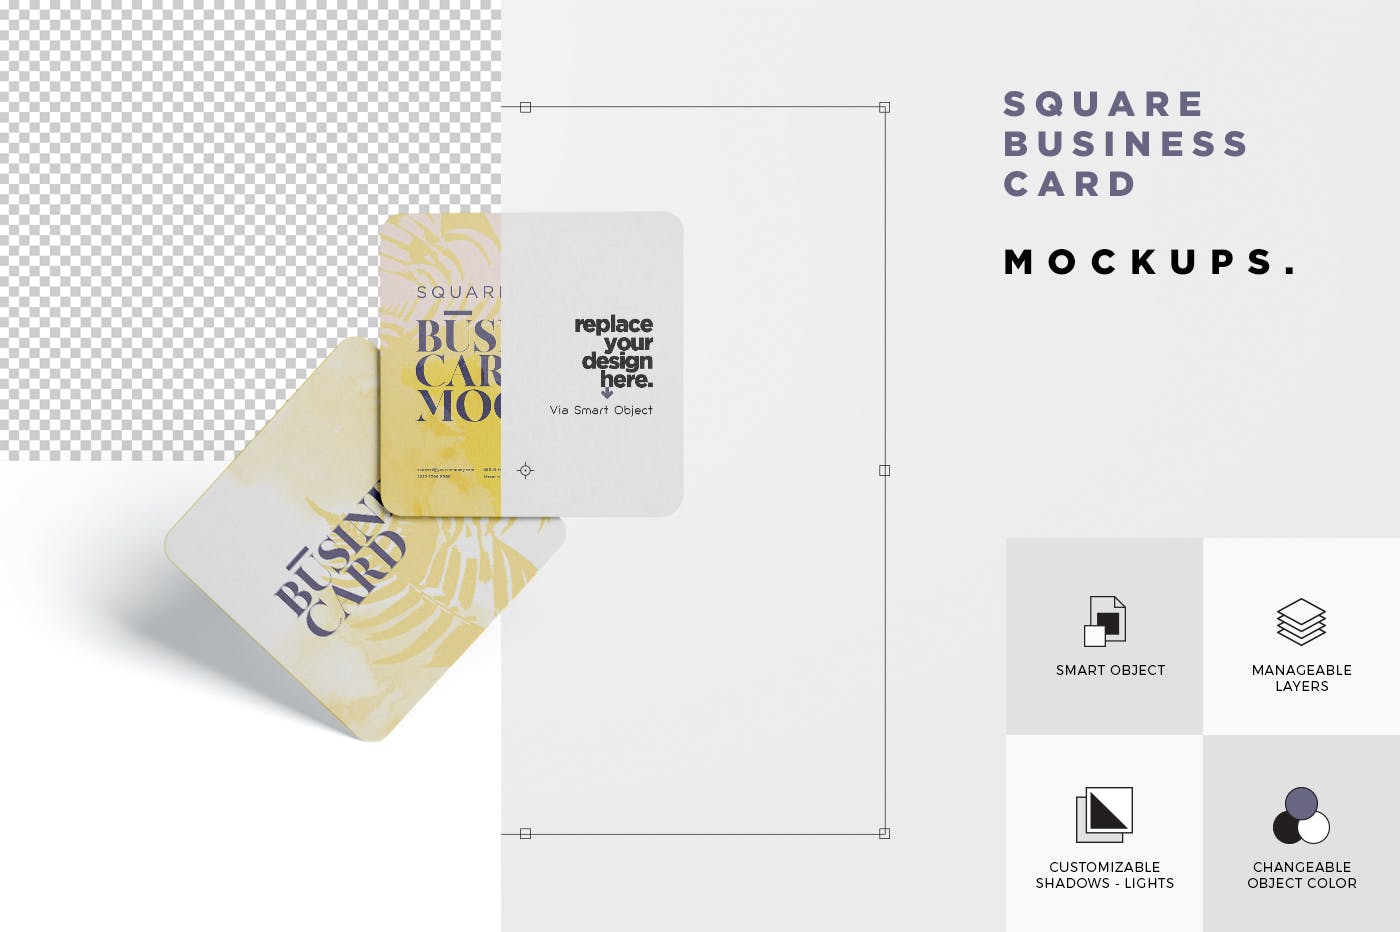 圆角设计风格企业名片效果图素材中国精选 Business Card Mockup – Square Round Corner插图(5)